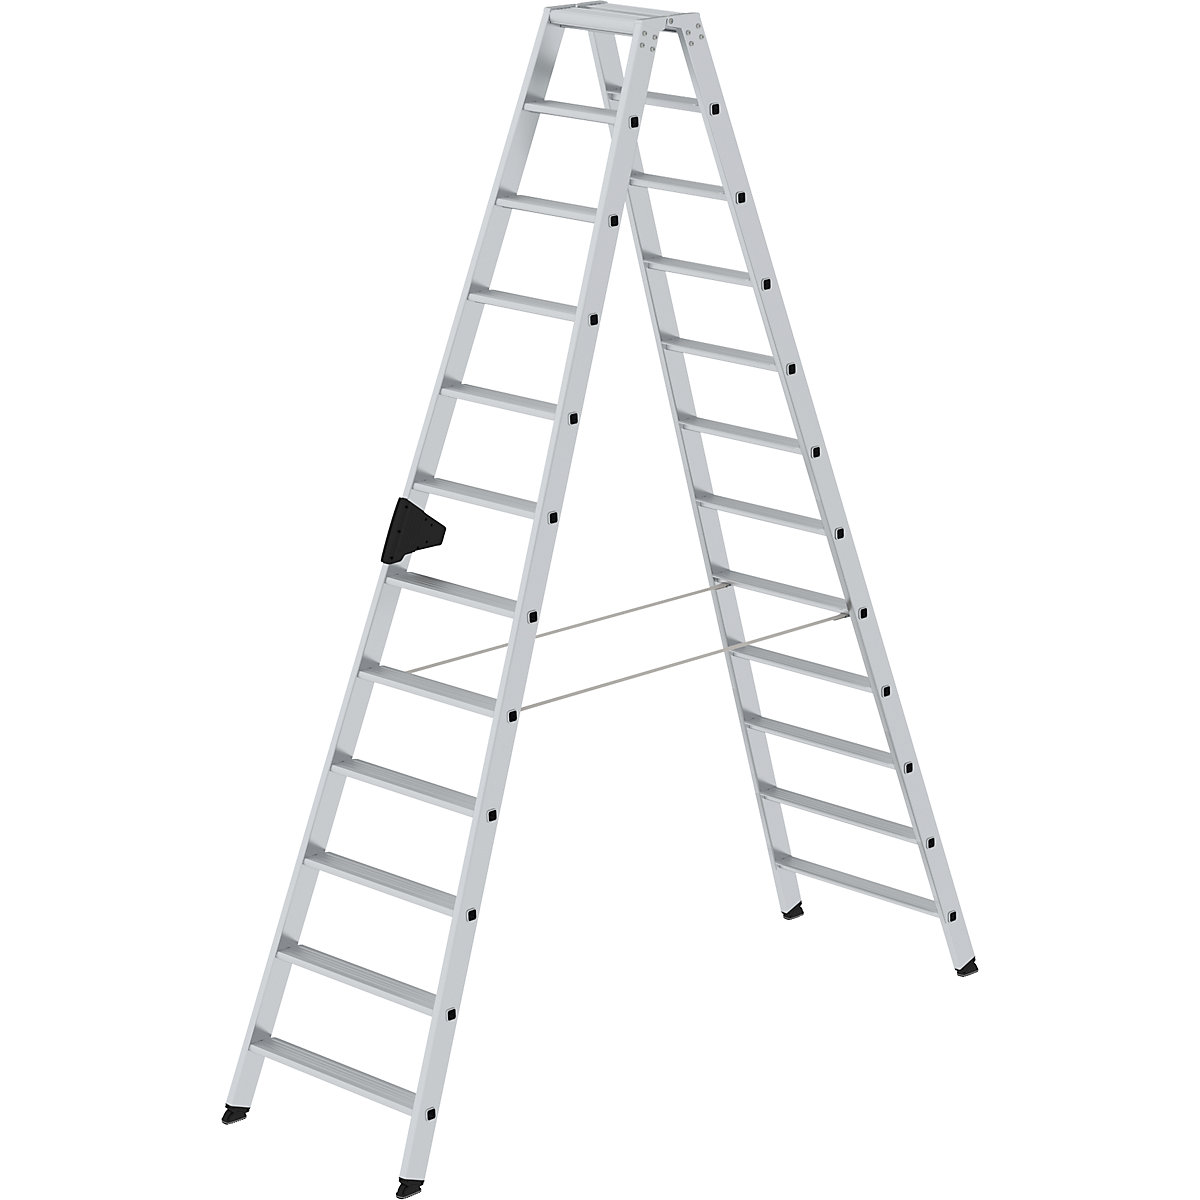 MUNK Stufen-Stehleiter, beidseitig, Komfort-Ausführung mit ergo-pad®, 2 x 12 Stufen